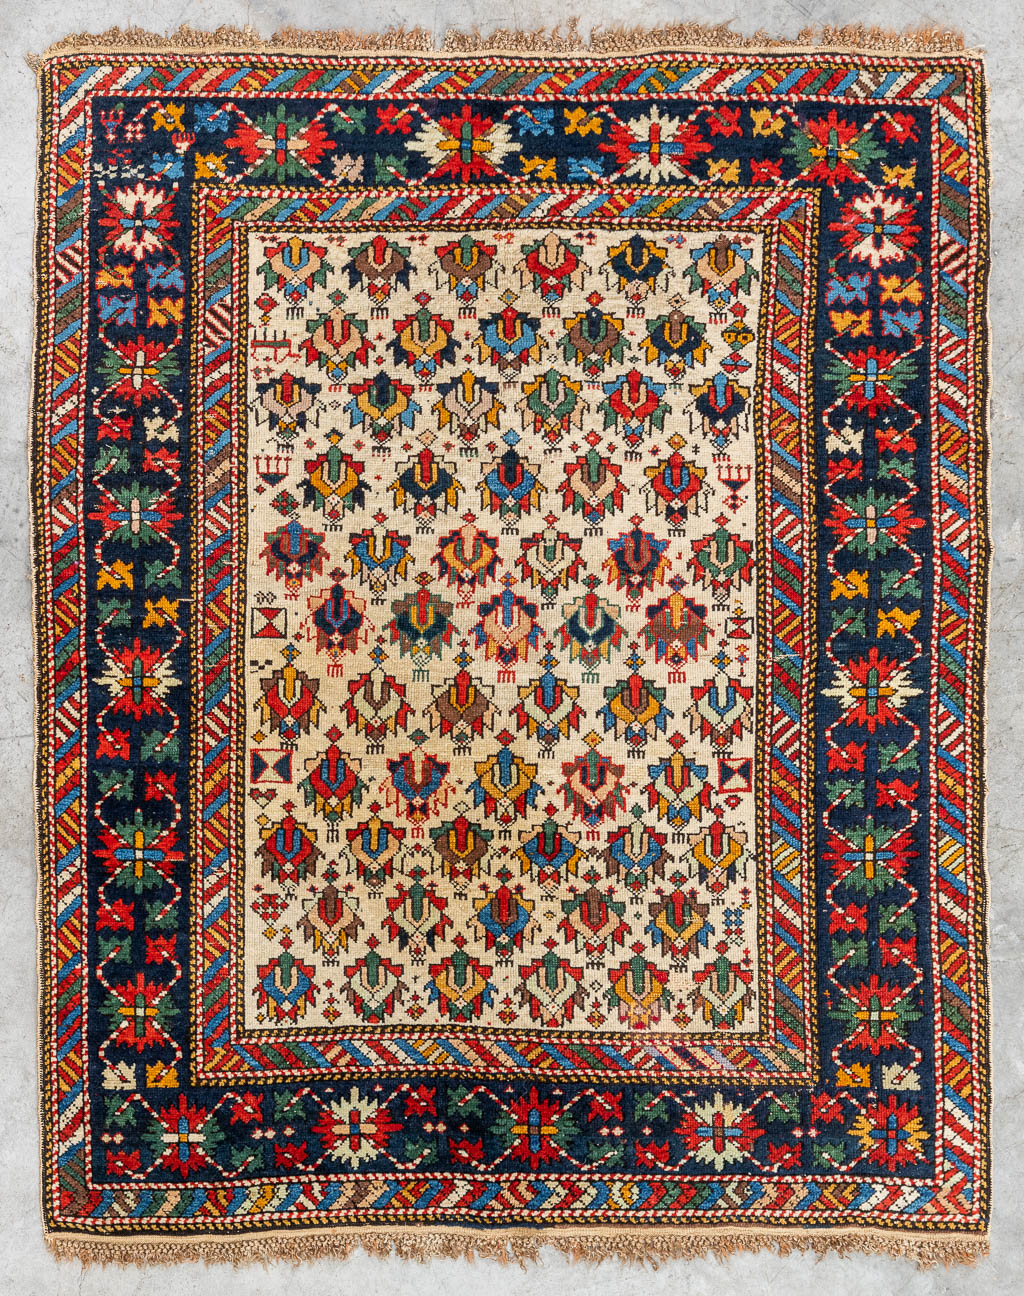  An Oriental hand-made carpet, Daghestan. (130 x 105 cm) 